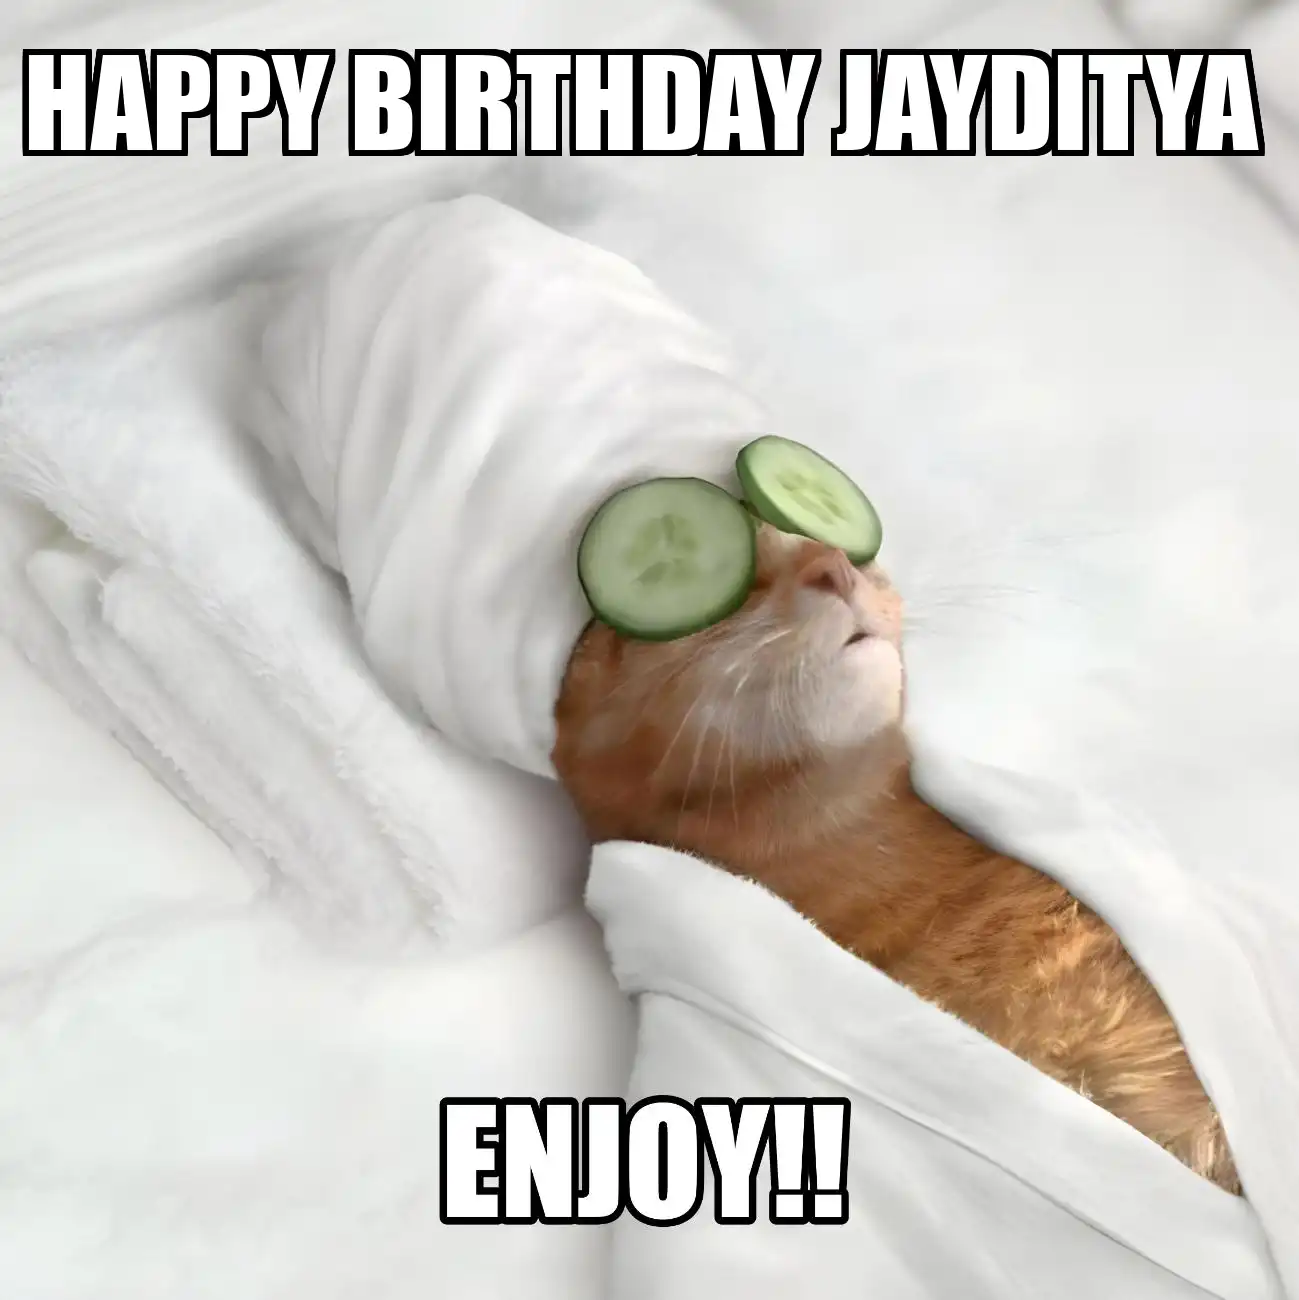 Happy Birthday Jayditya Enjoy Cat Meme